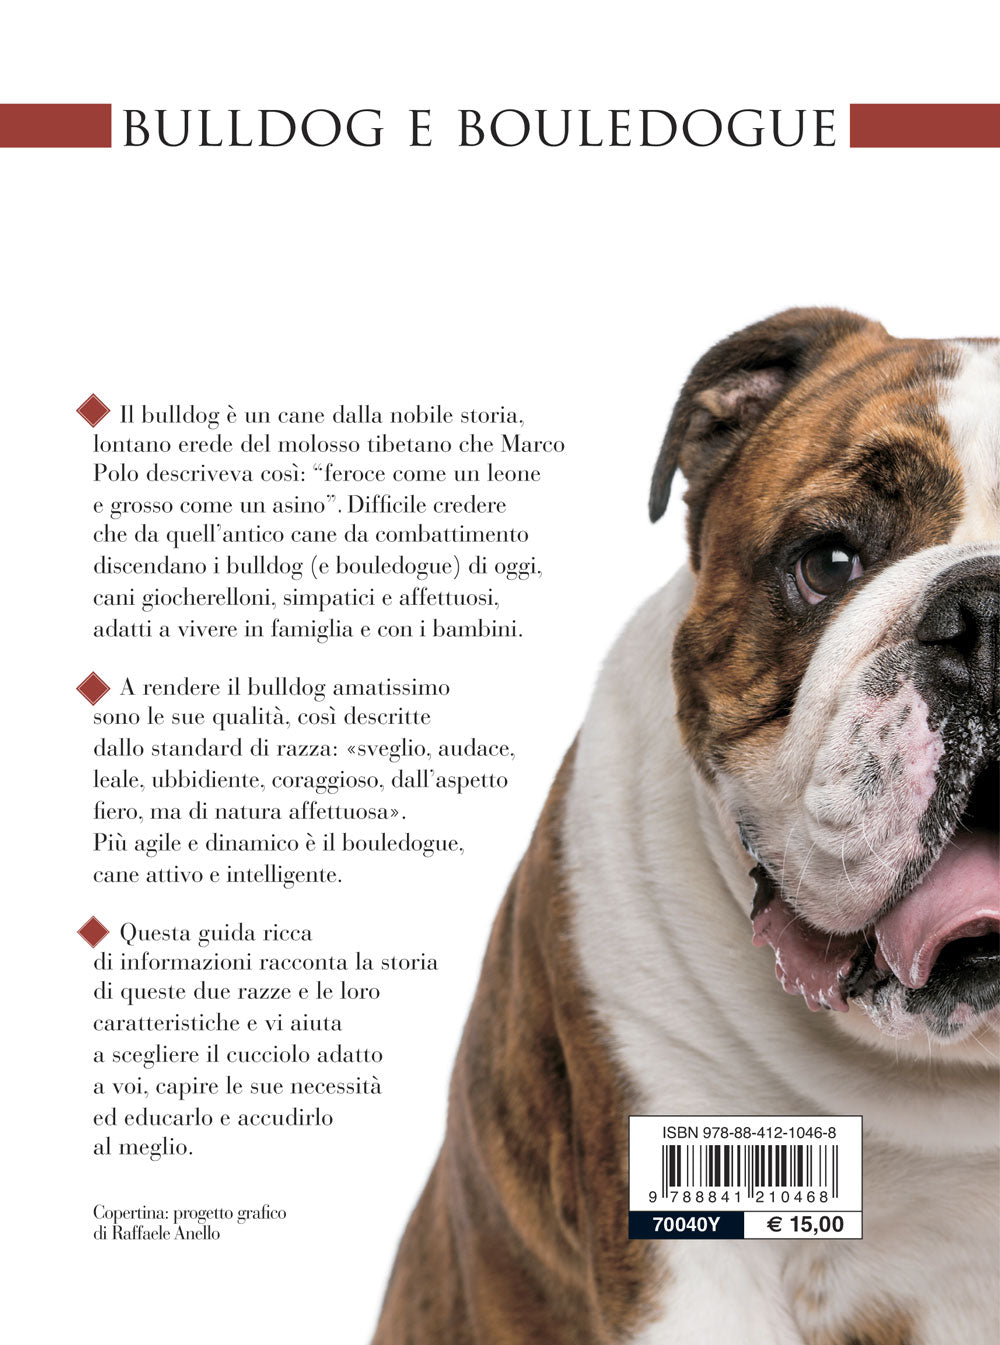 Bulldog e bouledogue. Educazione - Addestramento - Cure